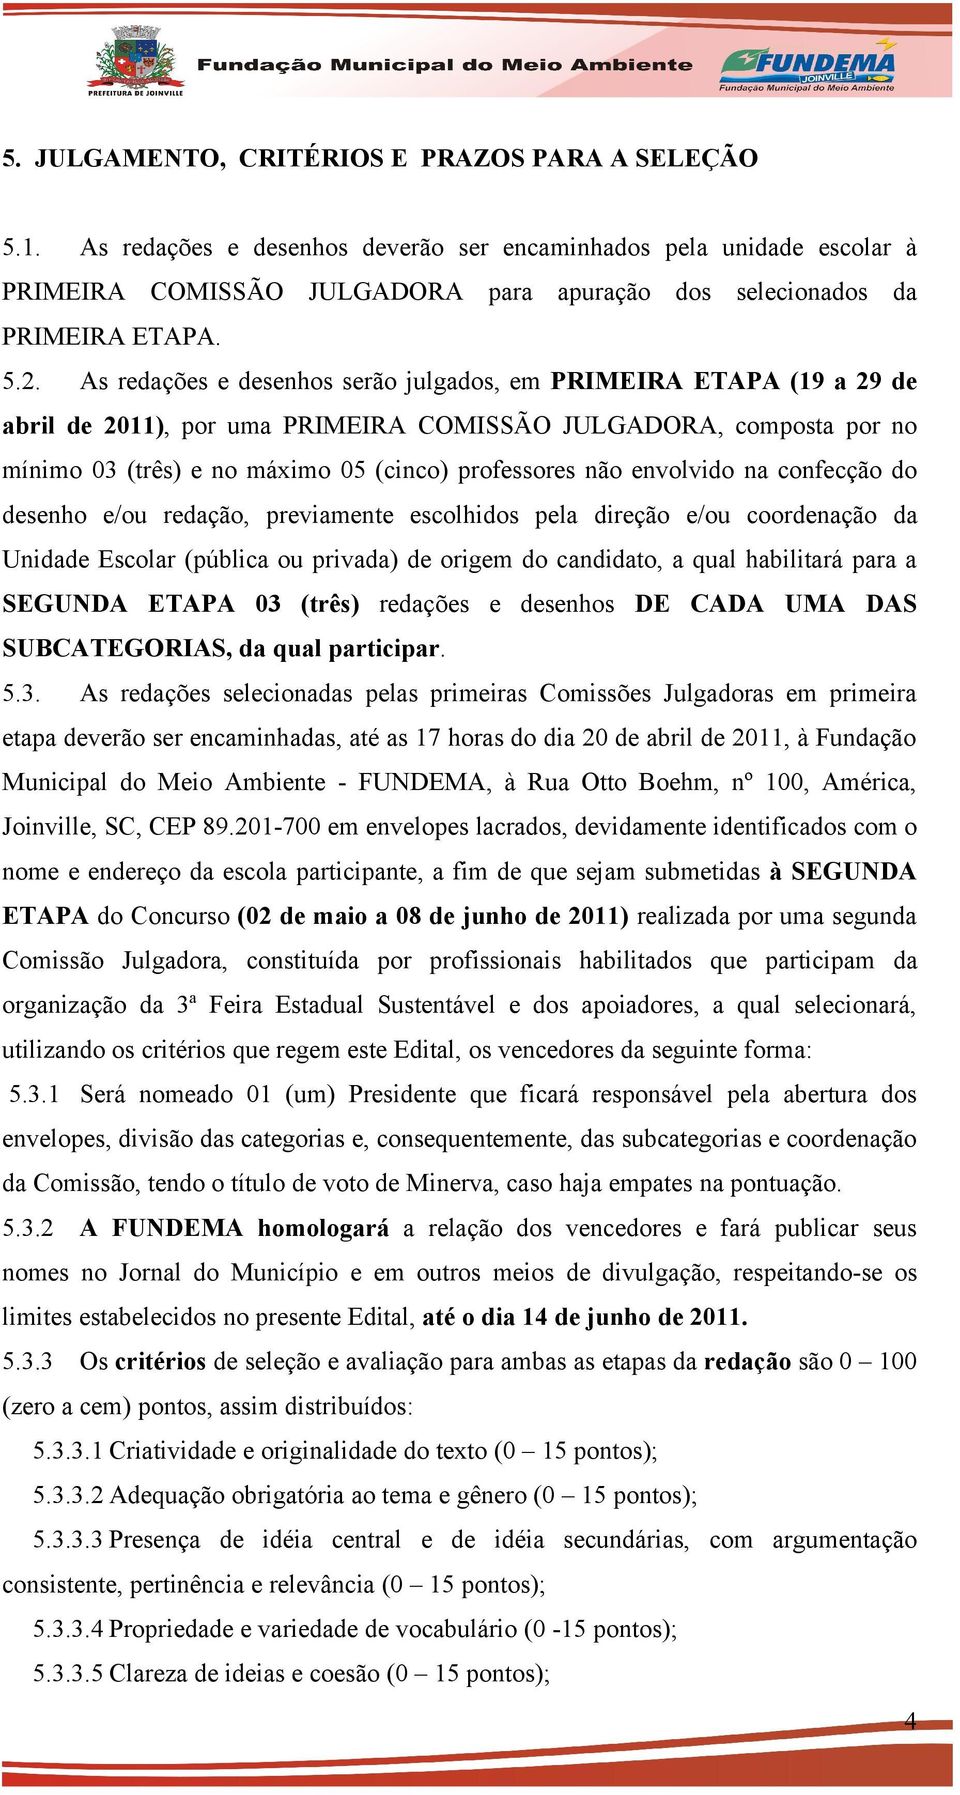 As redações e desenhos serão julgados, em PRIMEIRA ETAPA (19 a 29 de abril de 2011), por uma PRIMEIRA COMISSÃO JULGADORA, composta por no mínimo 03 (três) e no máximo 05 (cinco) professores não